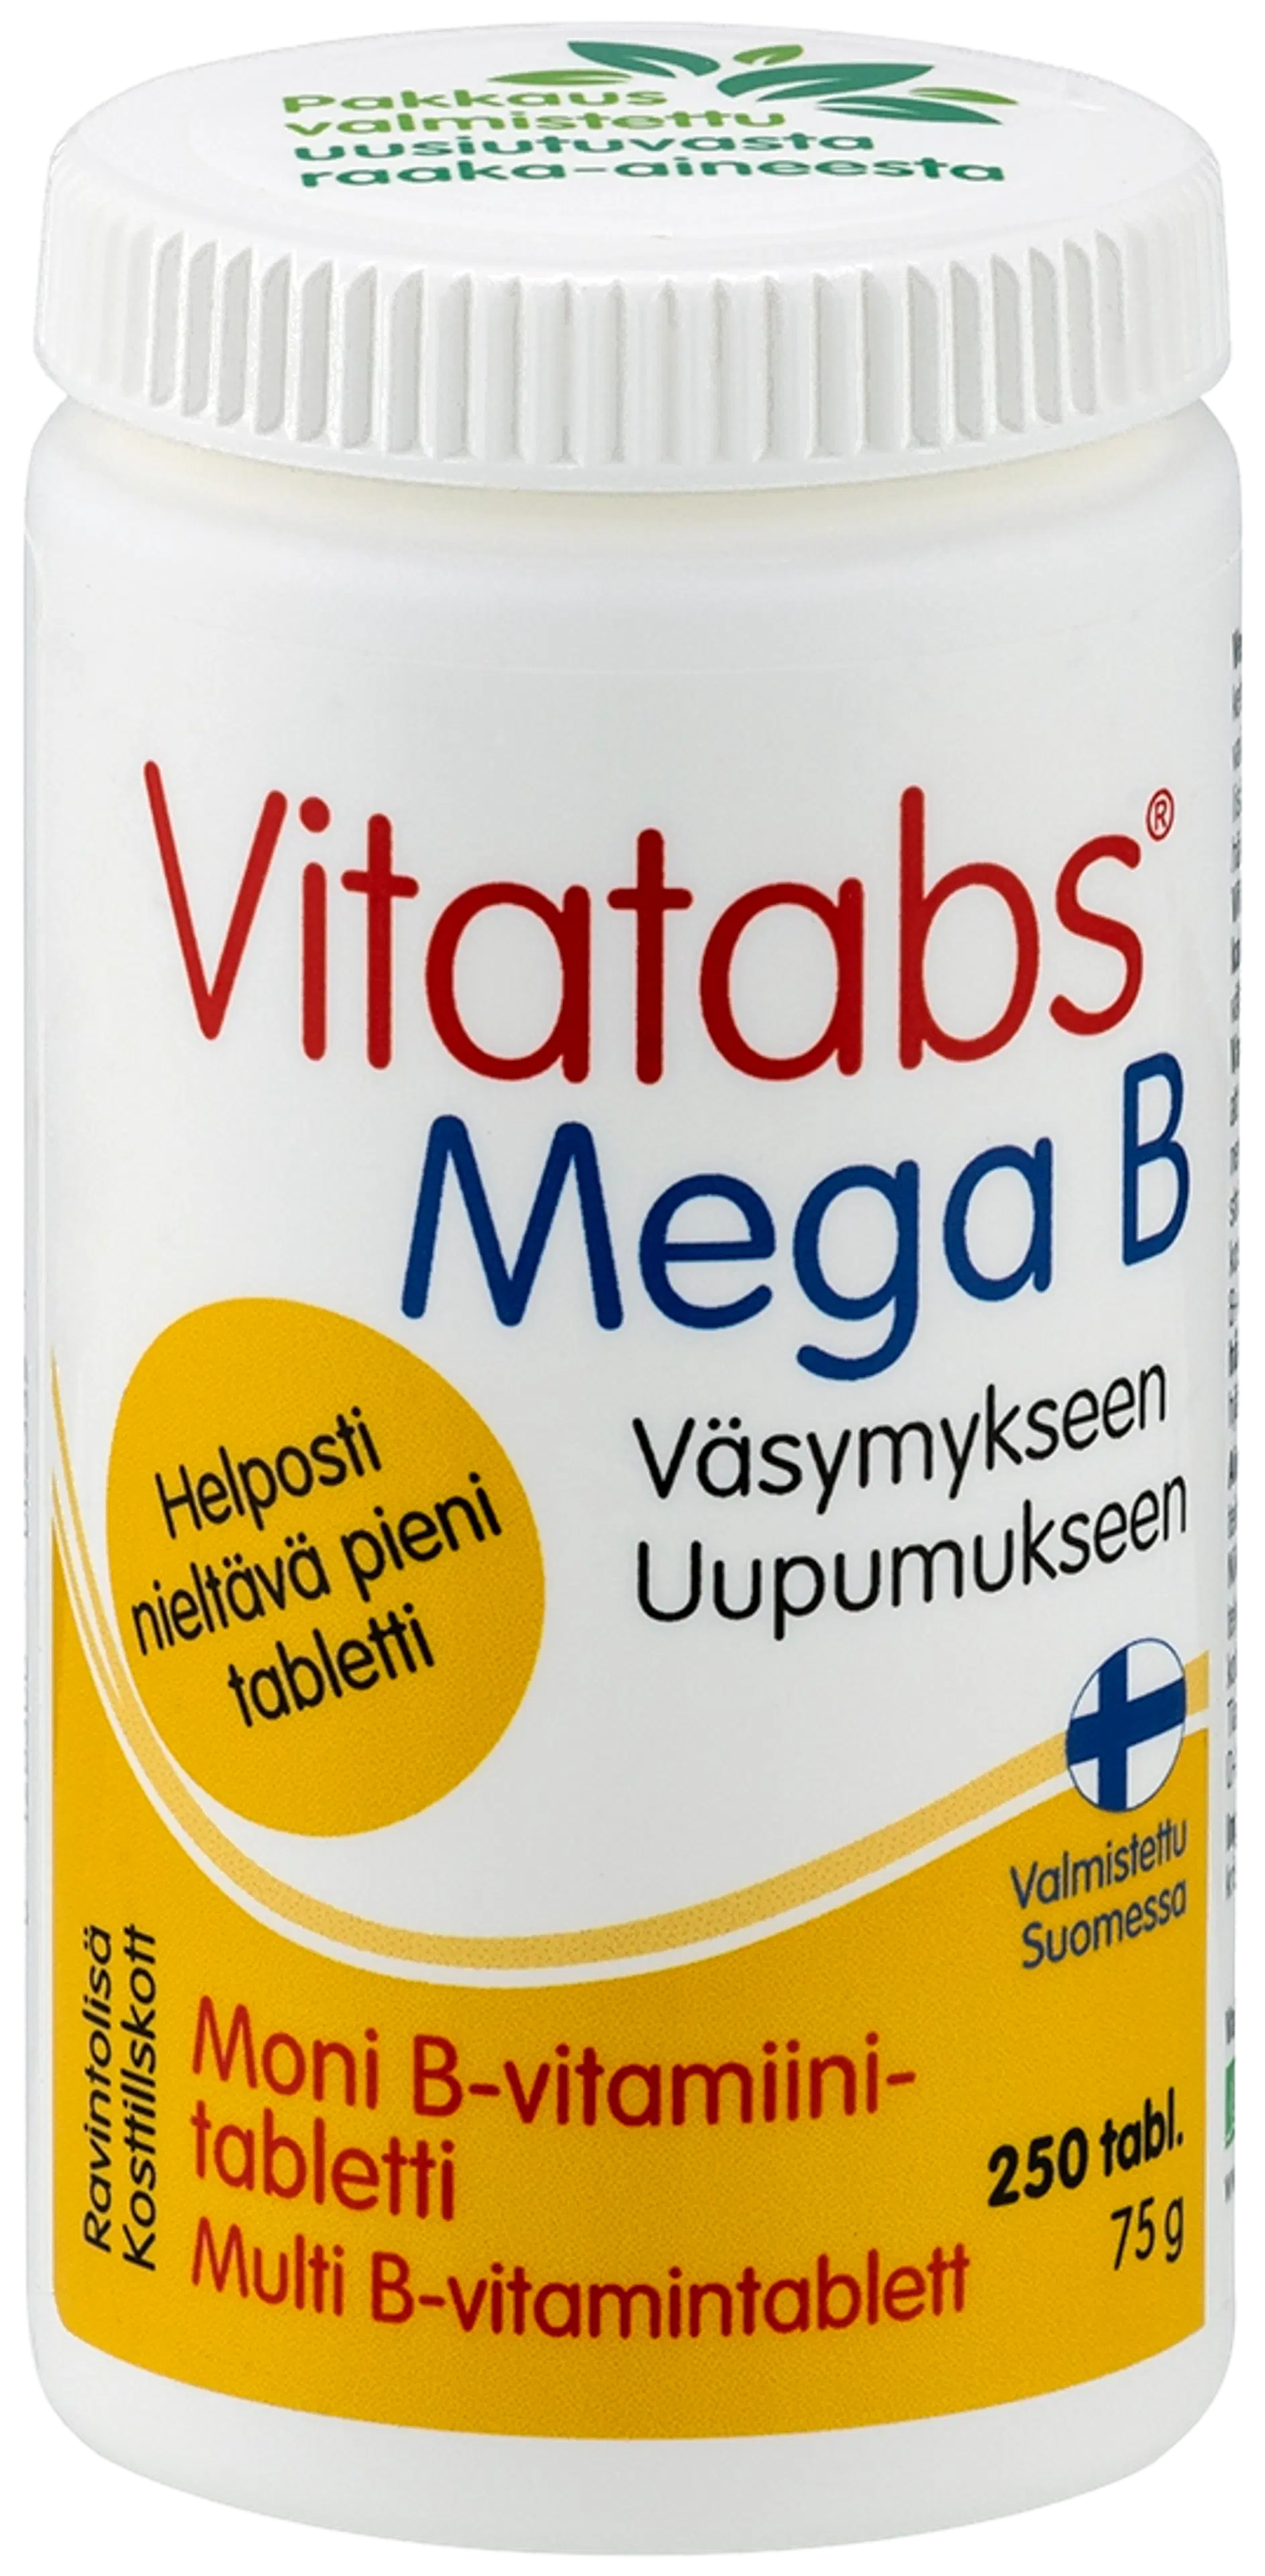 Vitatabs Mega B moni B-vitamiinitabletti 250 tabl